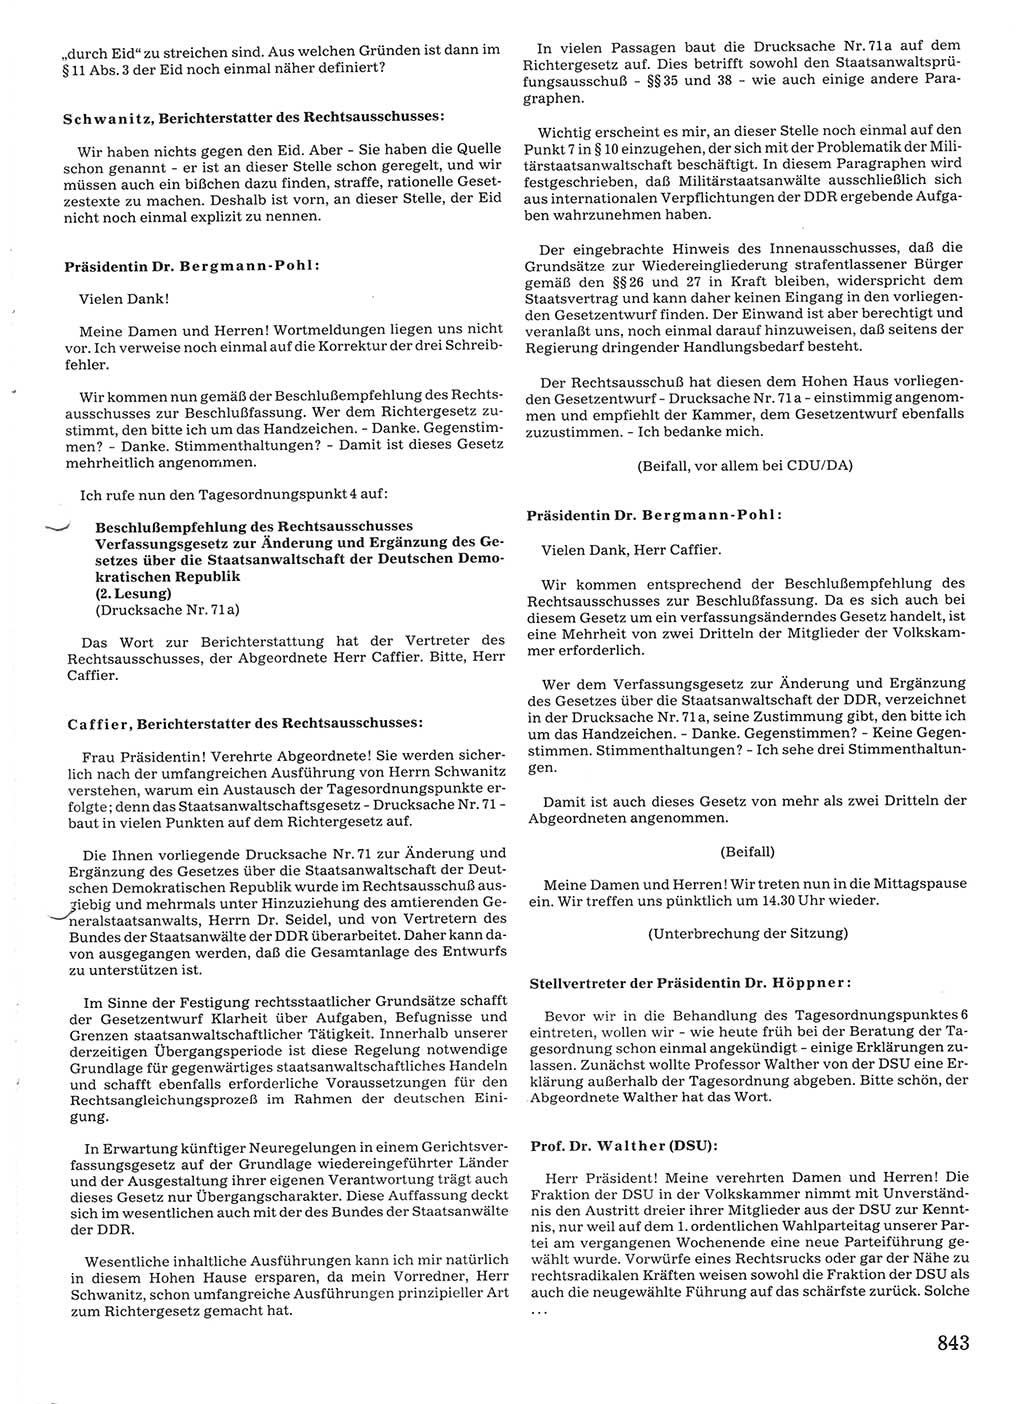 Tagungen der Volkskammer (VK) der Deutschen Demokratischen Republik (DDR), 10. Wahlperiode 1990, Seite 843 (VK. DDR 10. WP. 1990, Prot. Tg. 1-38, 5.4.-2.10.1990, S. 843)